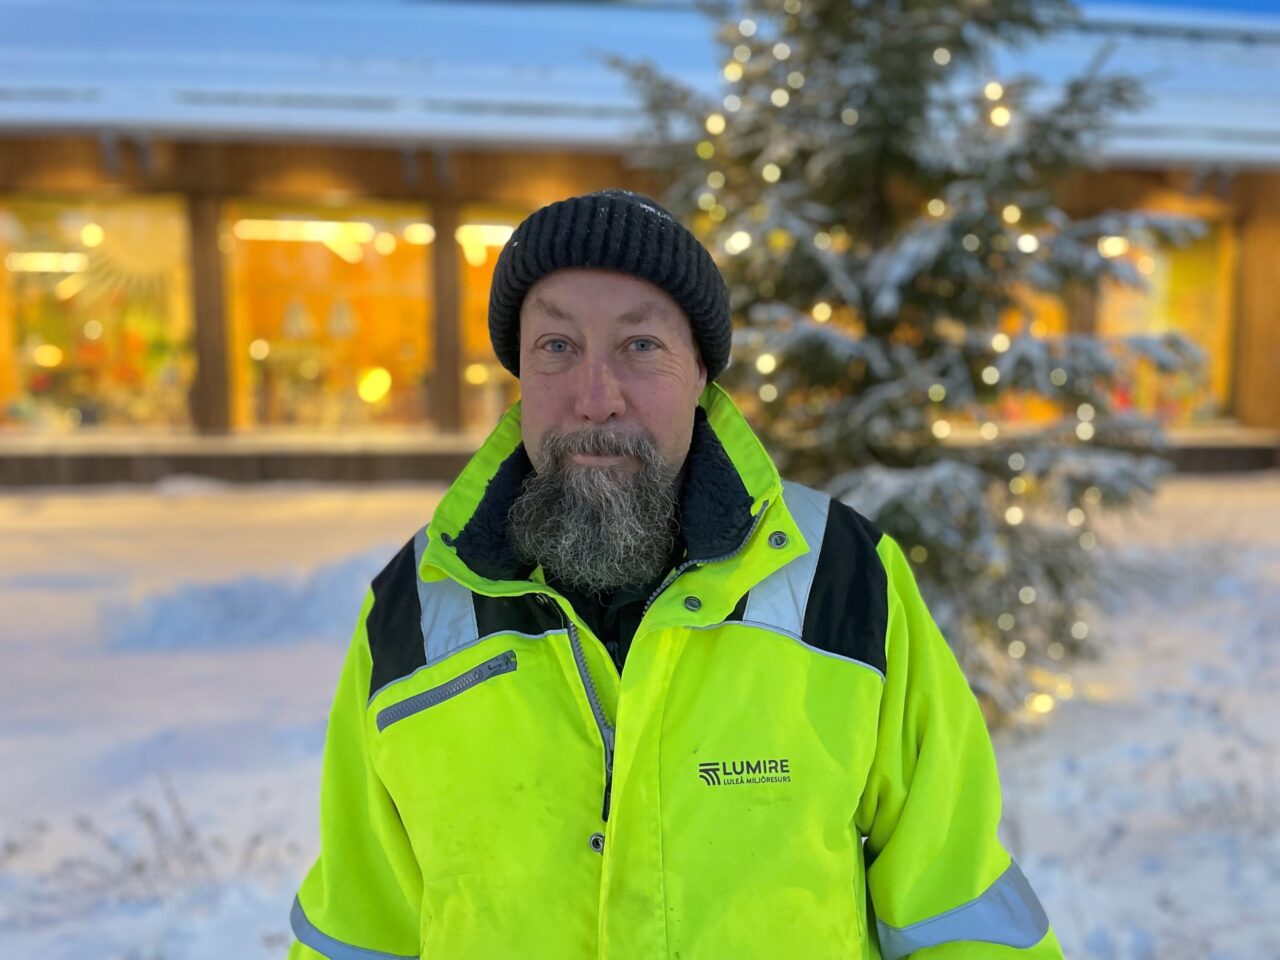 Bild på människa i gula varsel och arbetskläder i vintrigt landskap med julgran i bakgrund